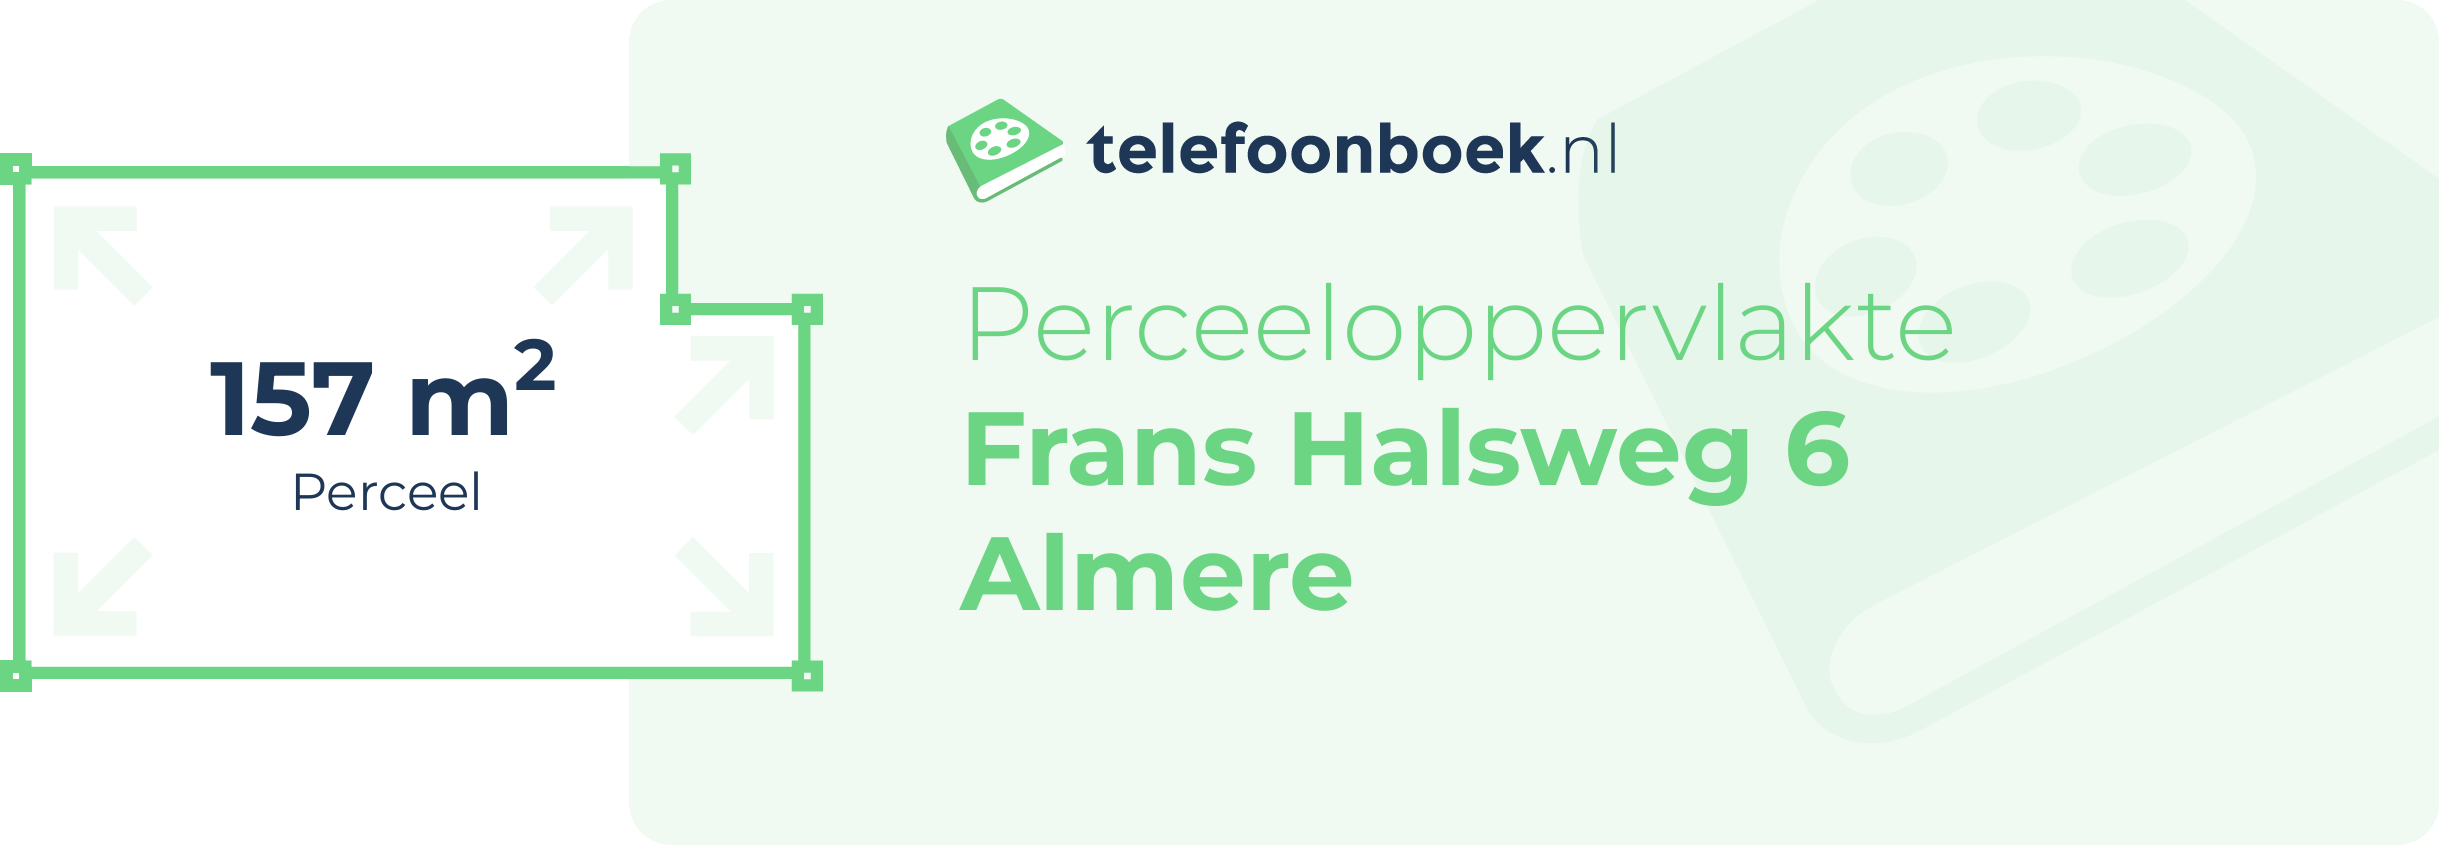 Perceeloppervlakte Frans Halsweg 6 Almere